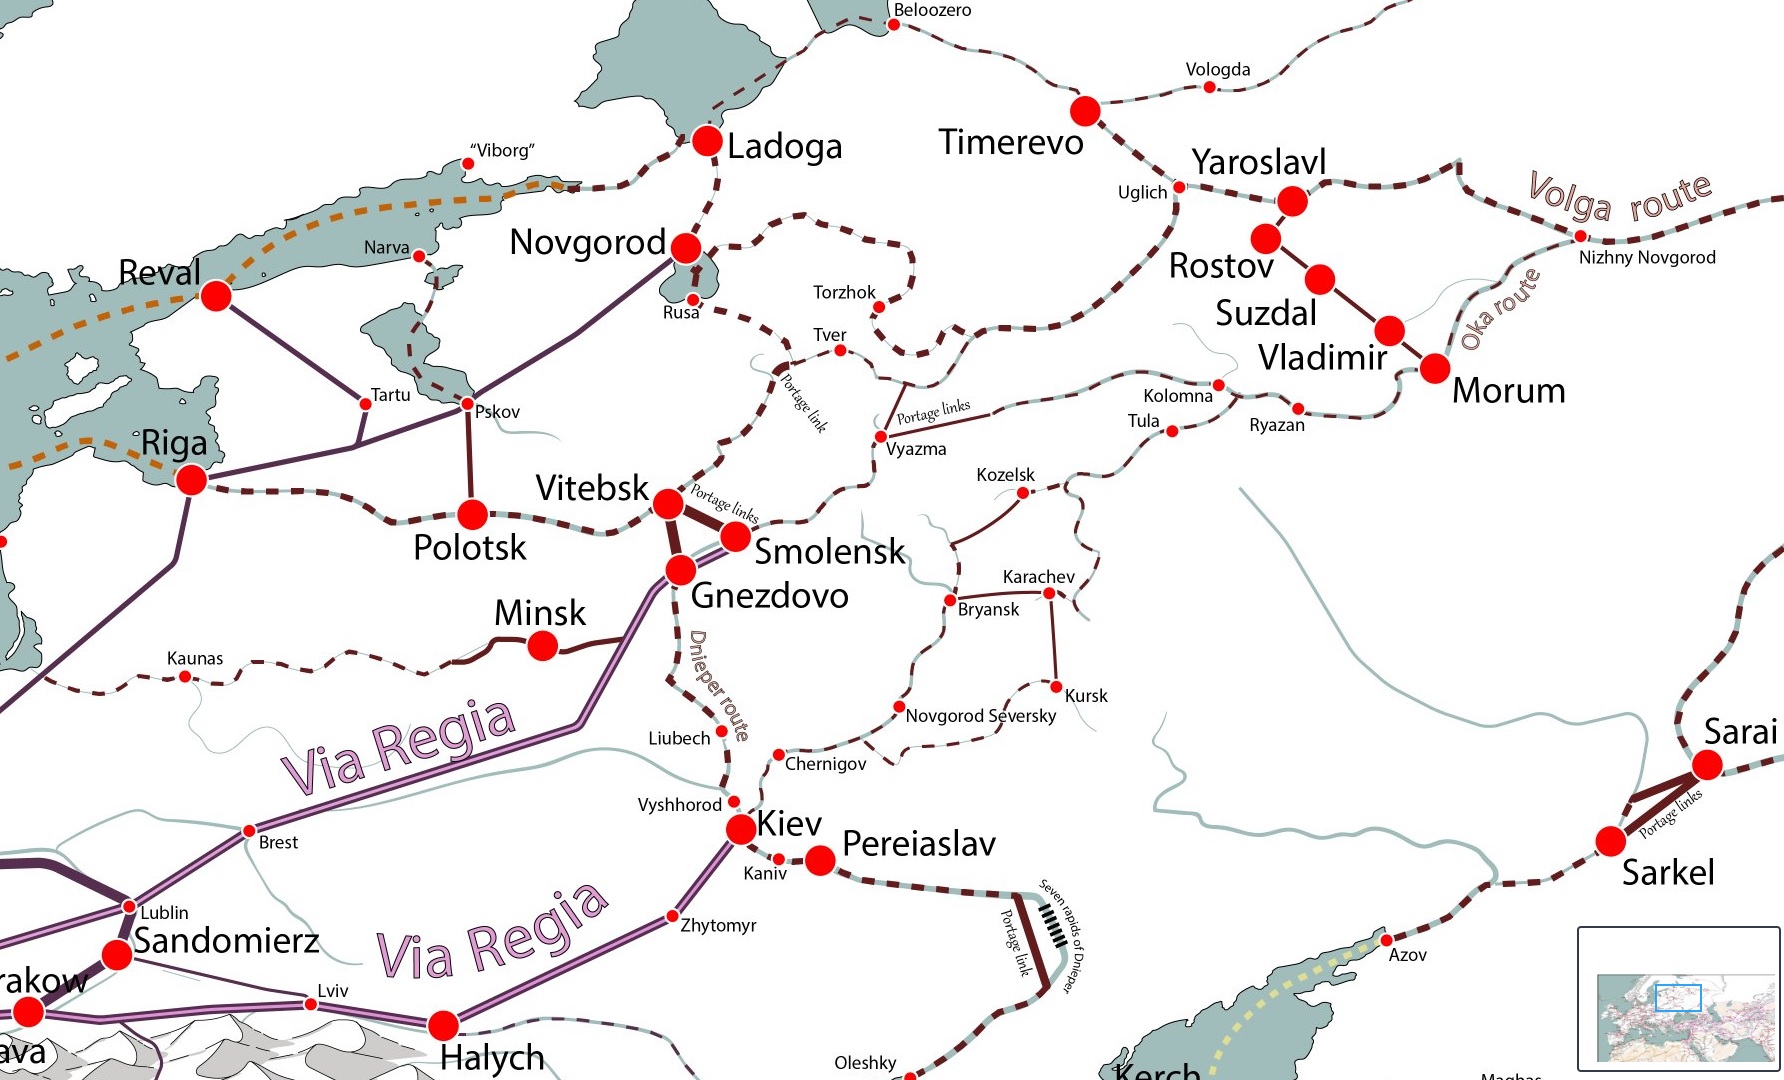 Какие торговые пути пролегали через территорию. Карта средневековых торговых путей. Торговые пути Европы в средние века карта. Карта торговых путей в средние века. Торговые пути средневековья карта Европа.